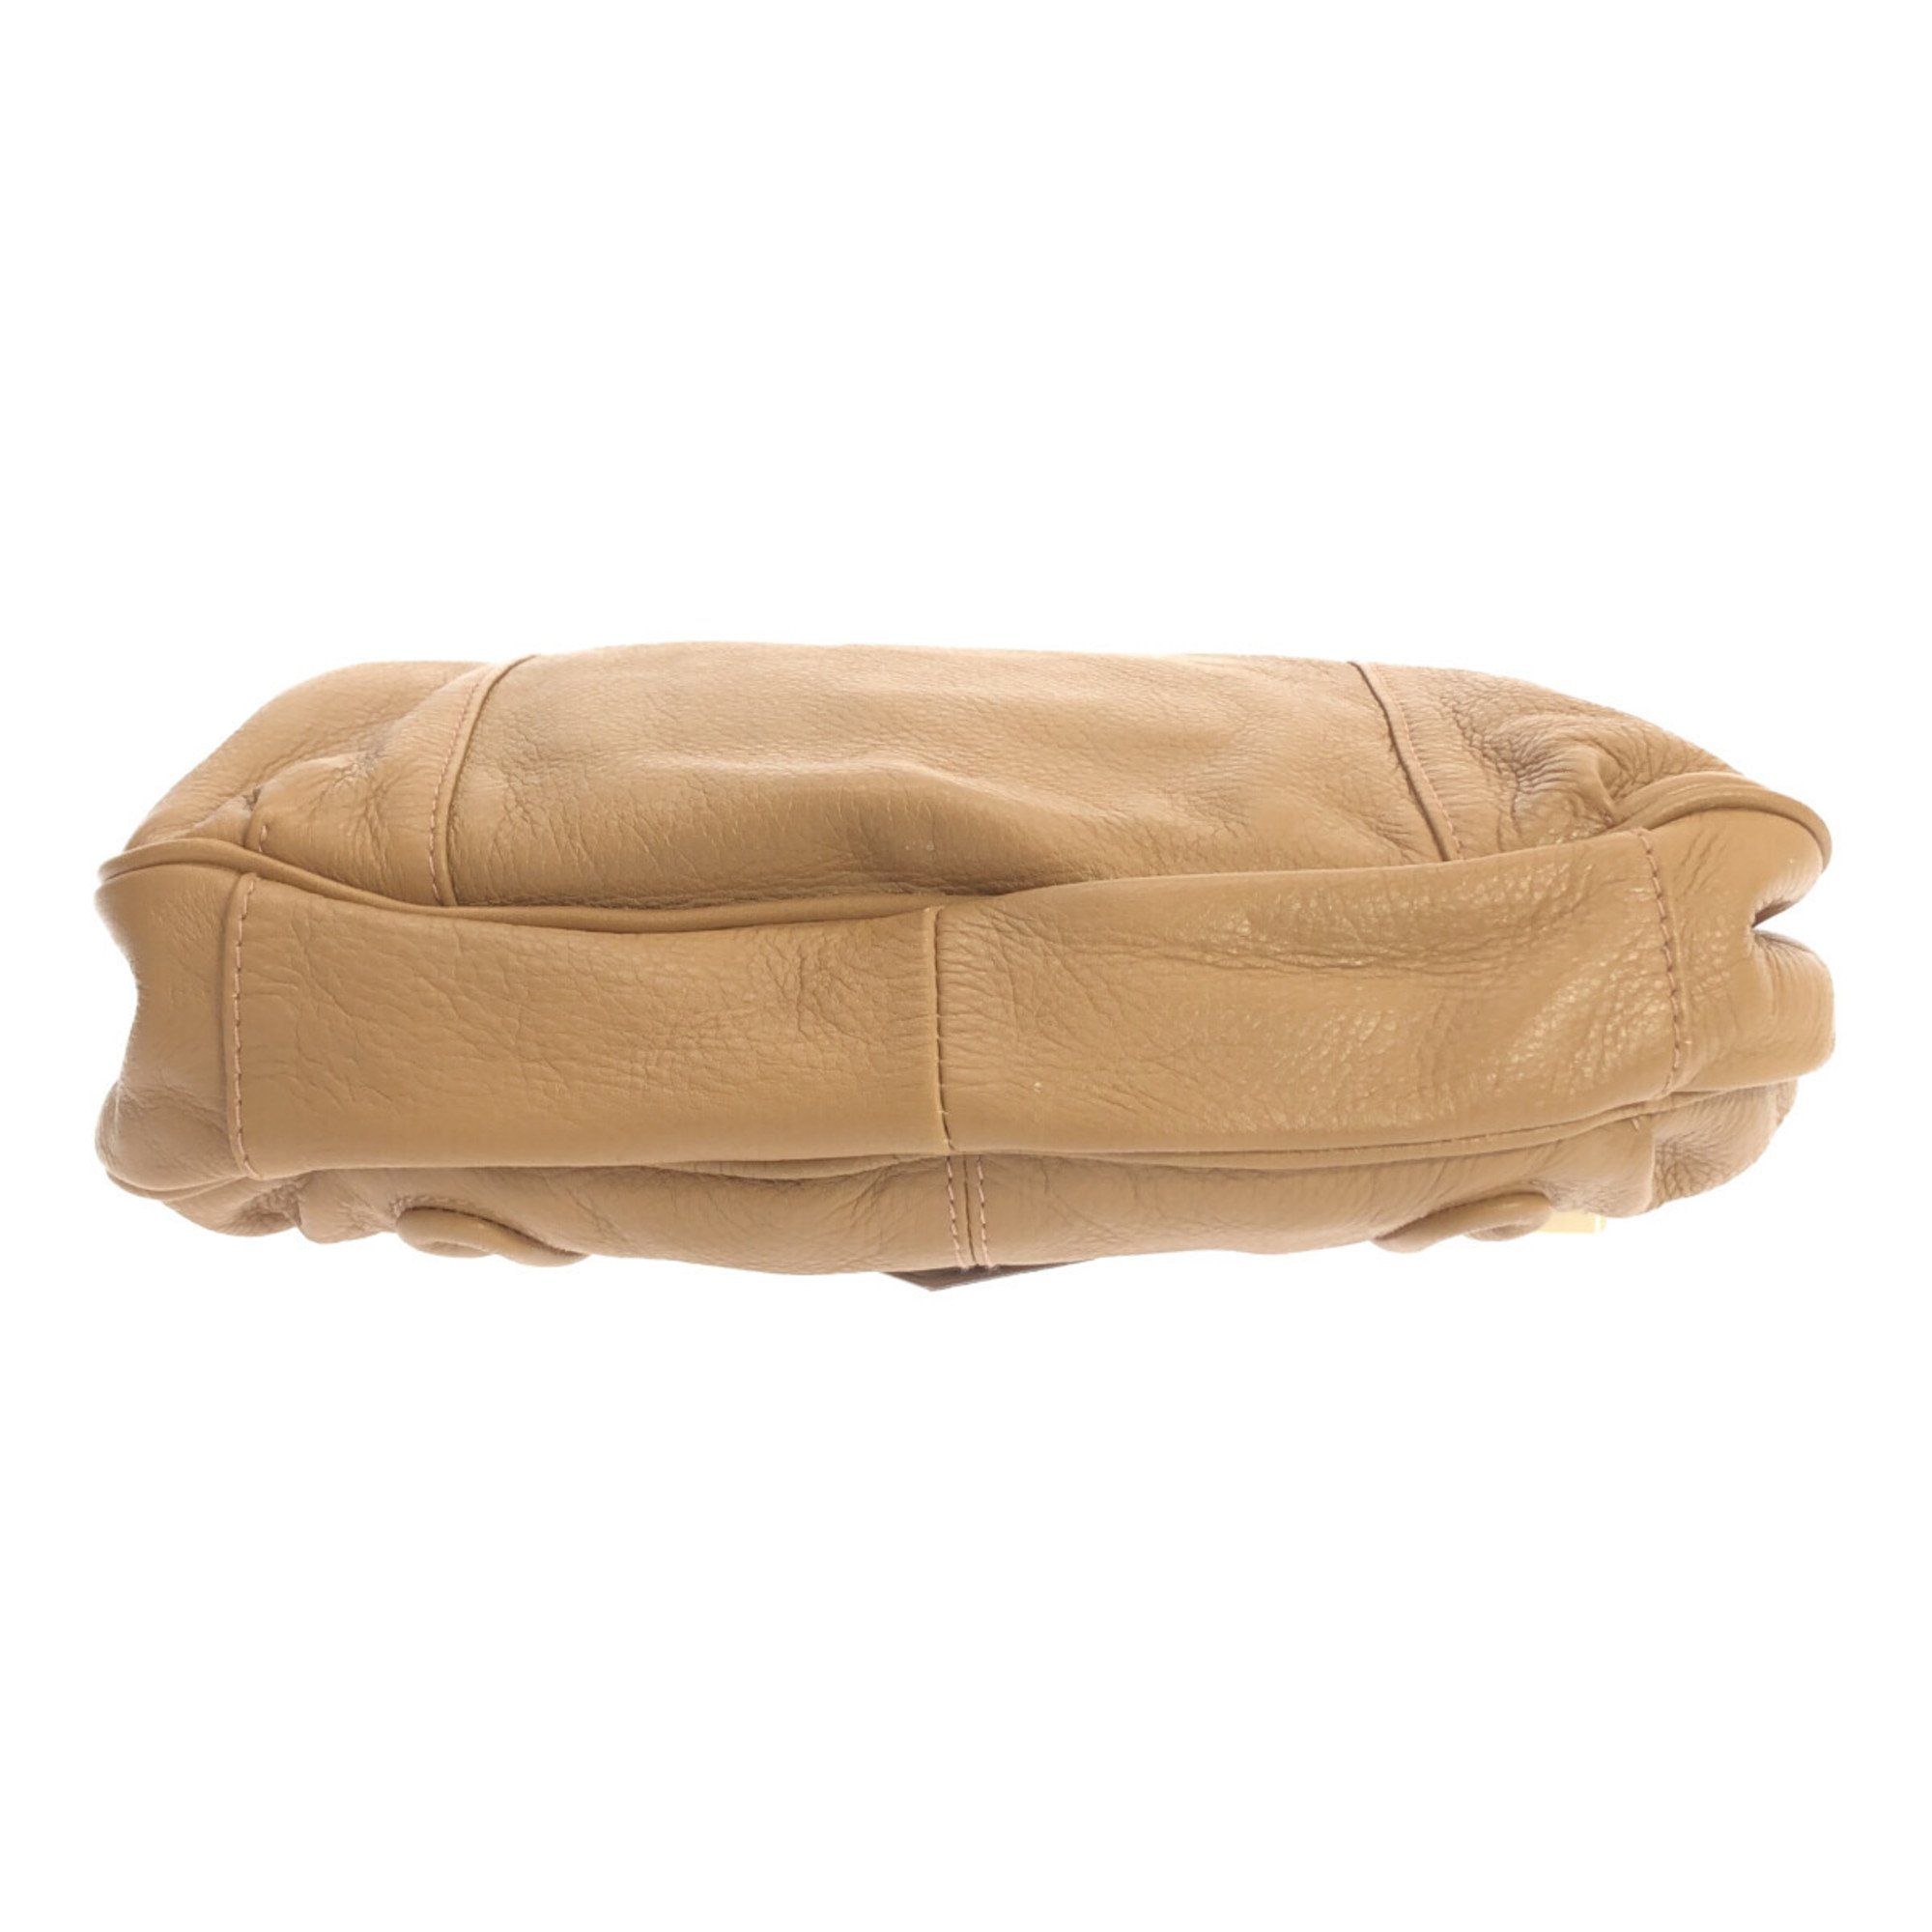 Chic Beige Leather Shoulder Bag for Women